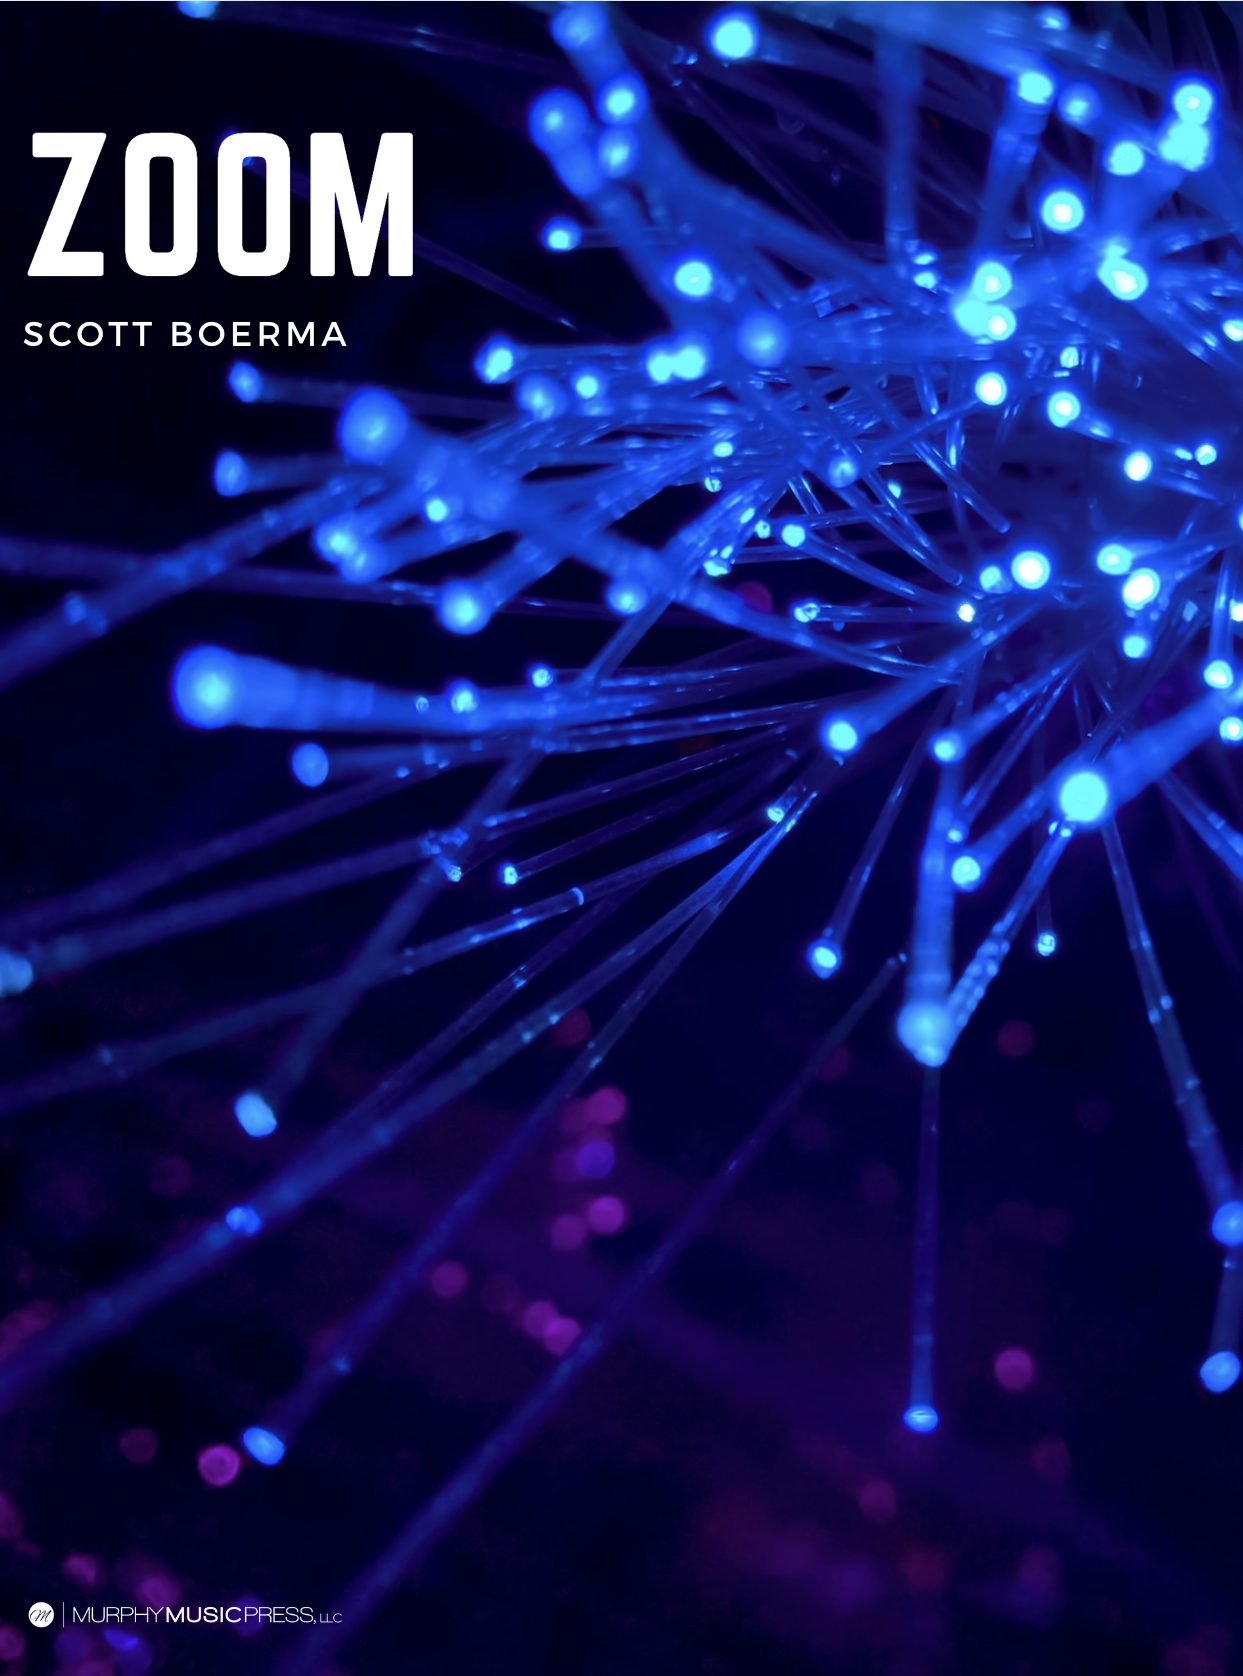 Zoom: Fanfare For Wind Ensemble (Score Only) by Scott Boerma